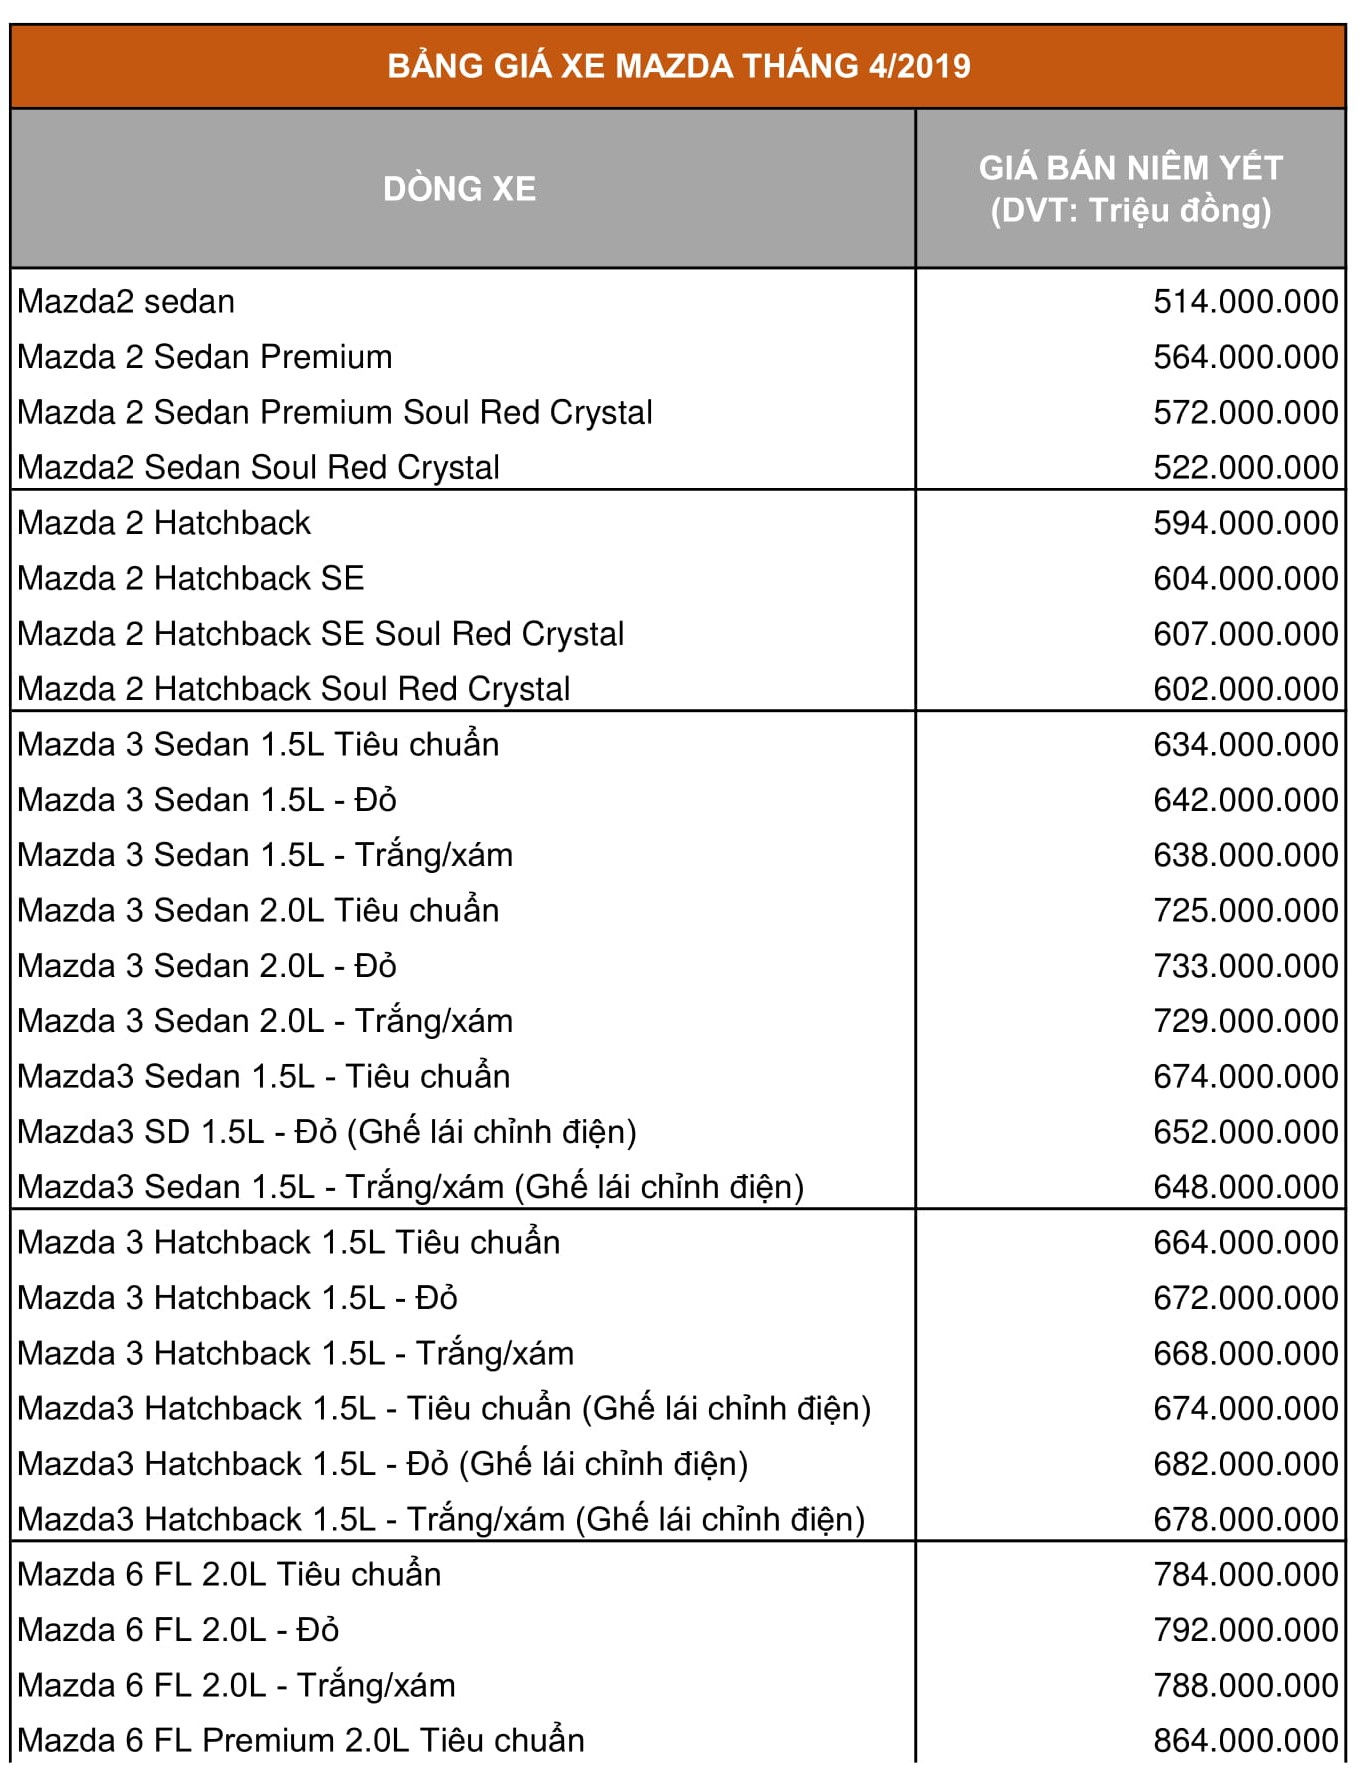 Giá xe Mazda tháng 4/2019: Giá xe bán tải BT-50 nhập khẩu từ Thái